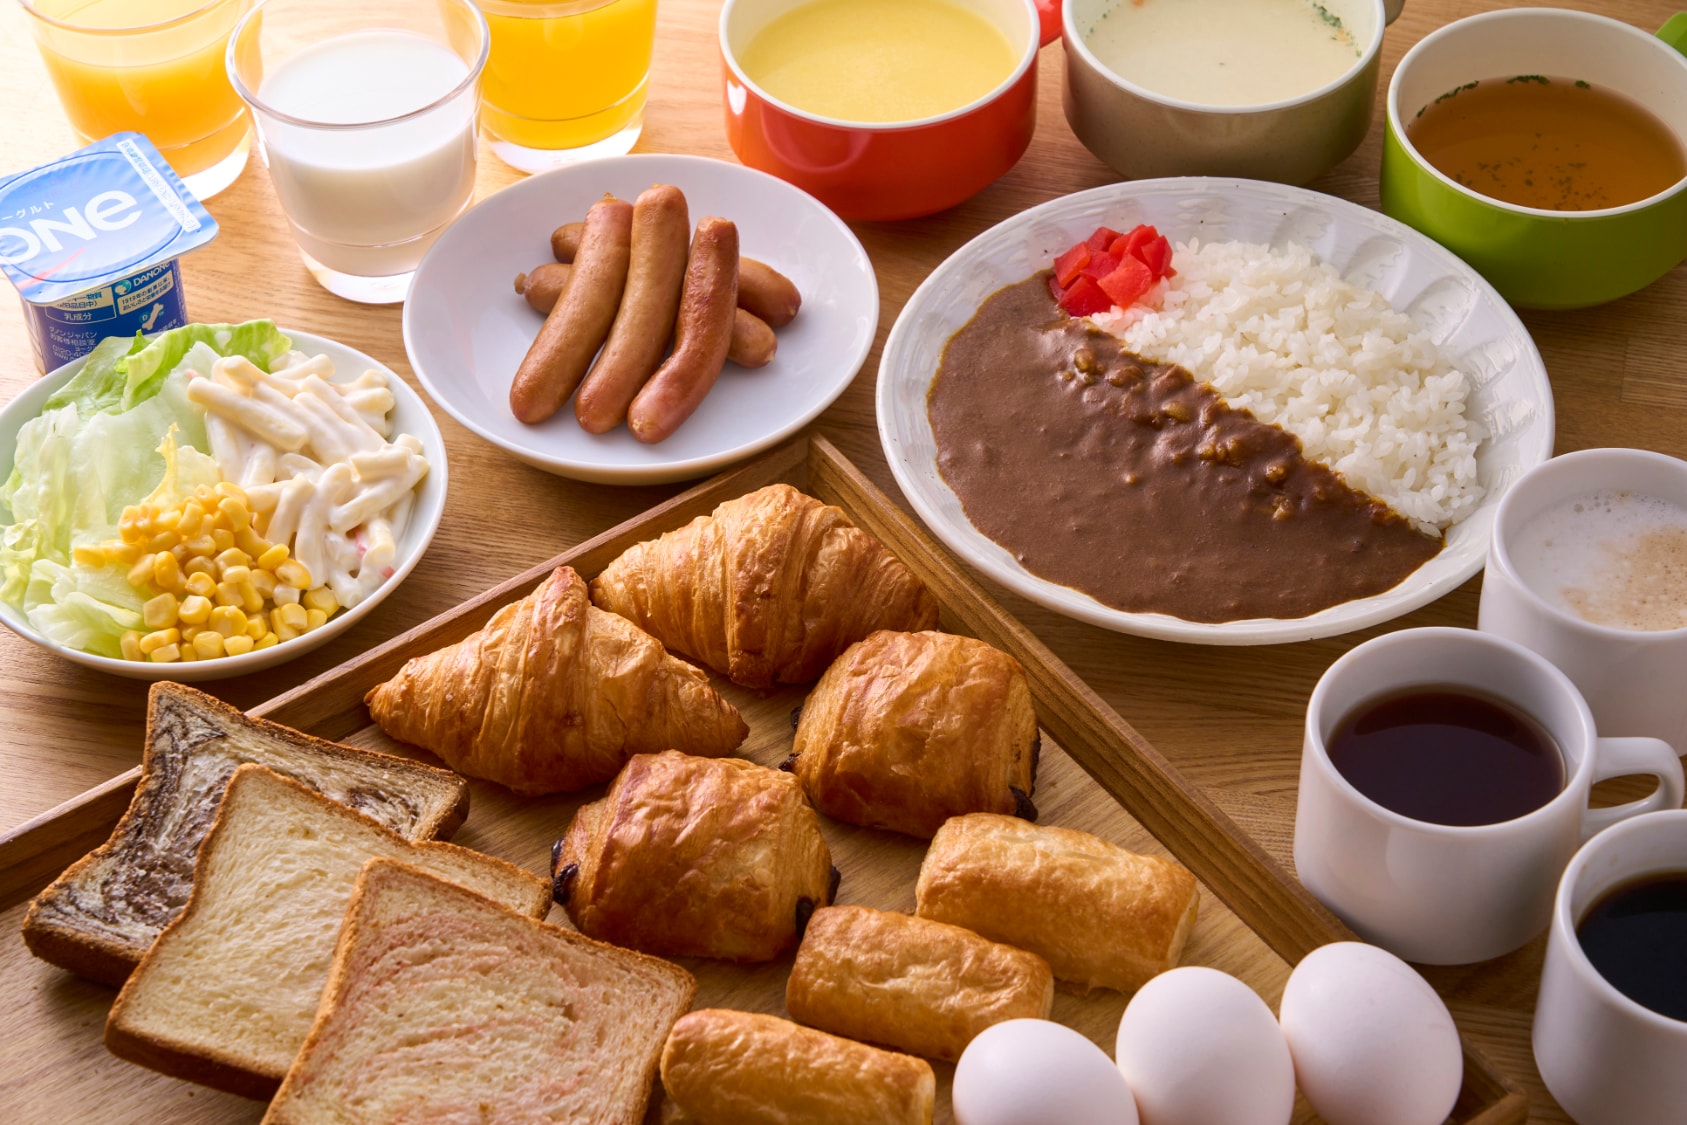 อาหารเช้าฟรี: แกงเช้าหลัก สลัด ขนมปังอบสดใหม่ ฯลฯ